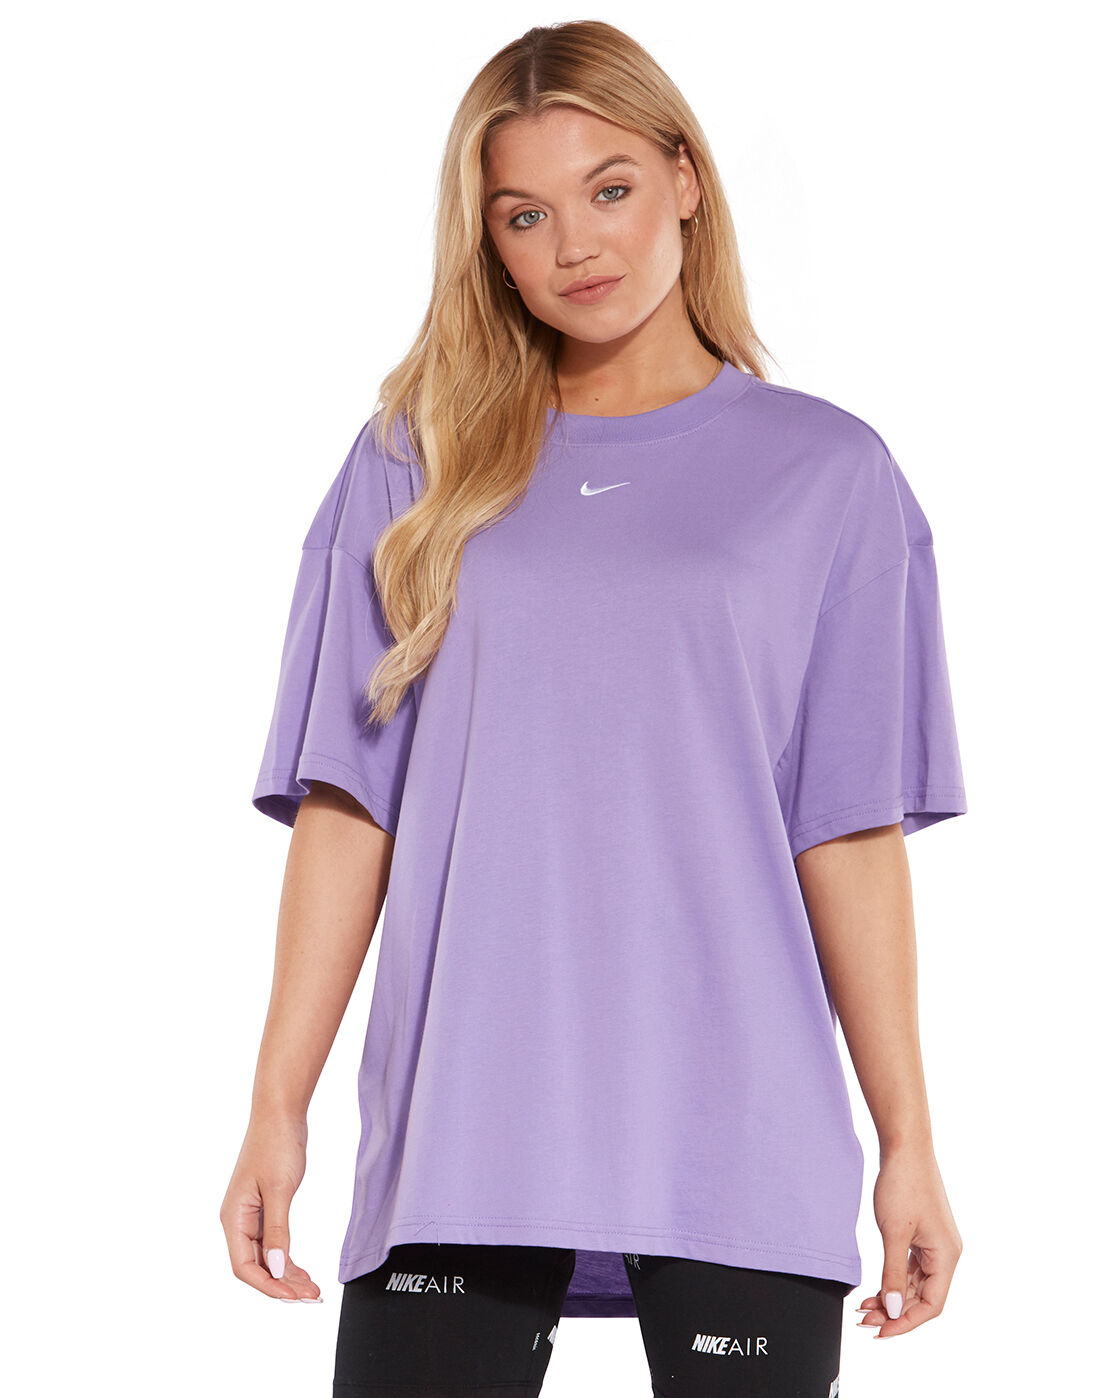 Women's Purple Nike T-Shirt | Life 